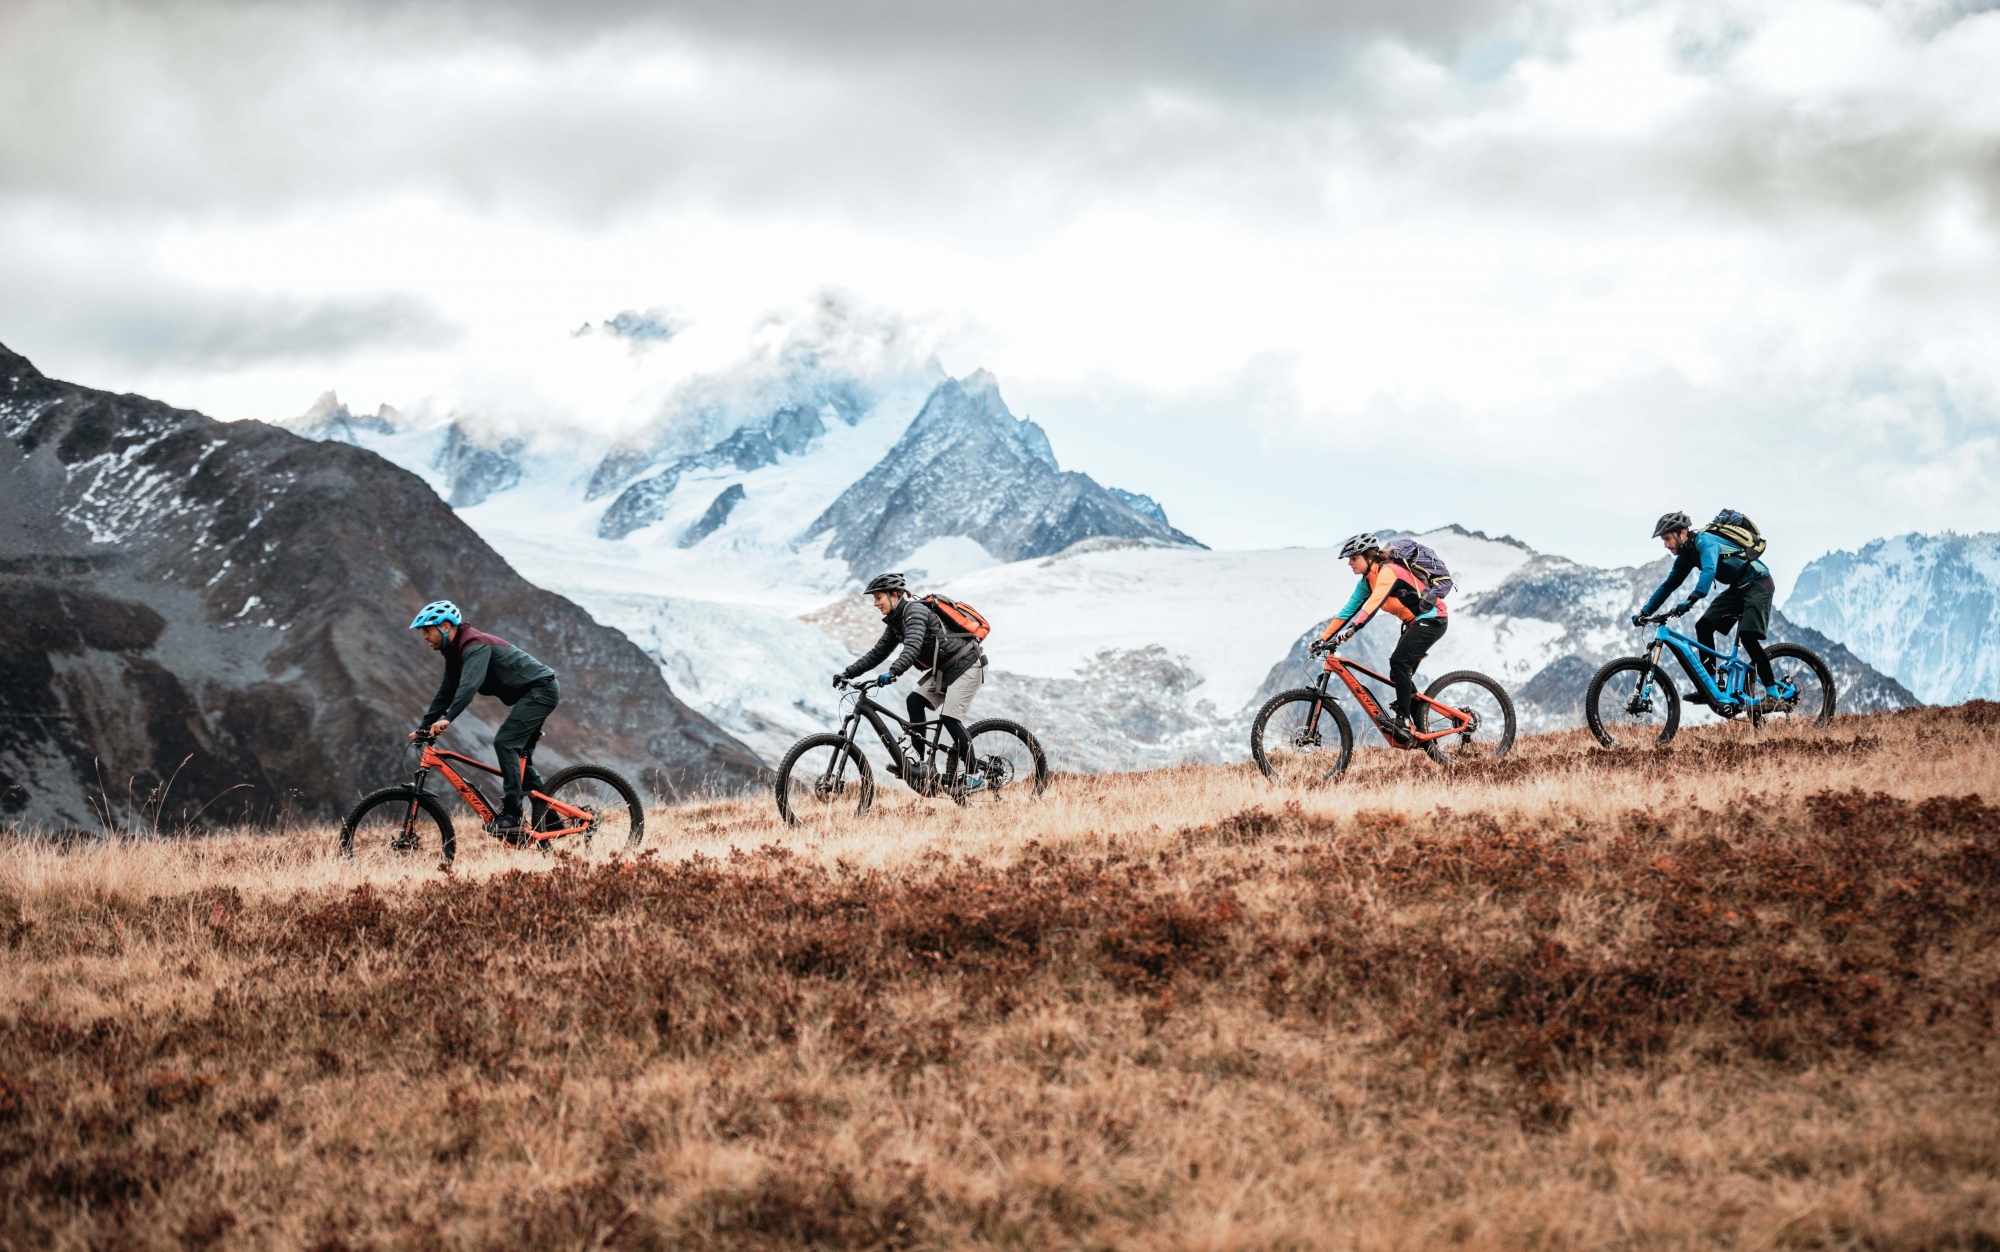 La haute route en e-bike se déroule dans des panoramas à couper le souffle, comme ici au col de Balme, avec le glacier d'Argentière en toile de fond.